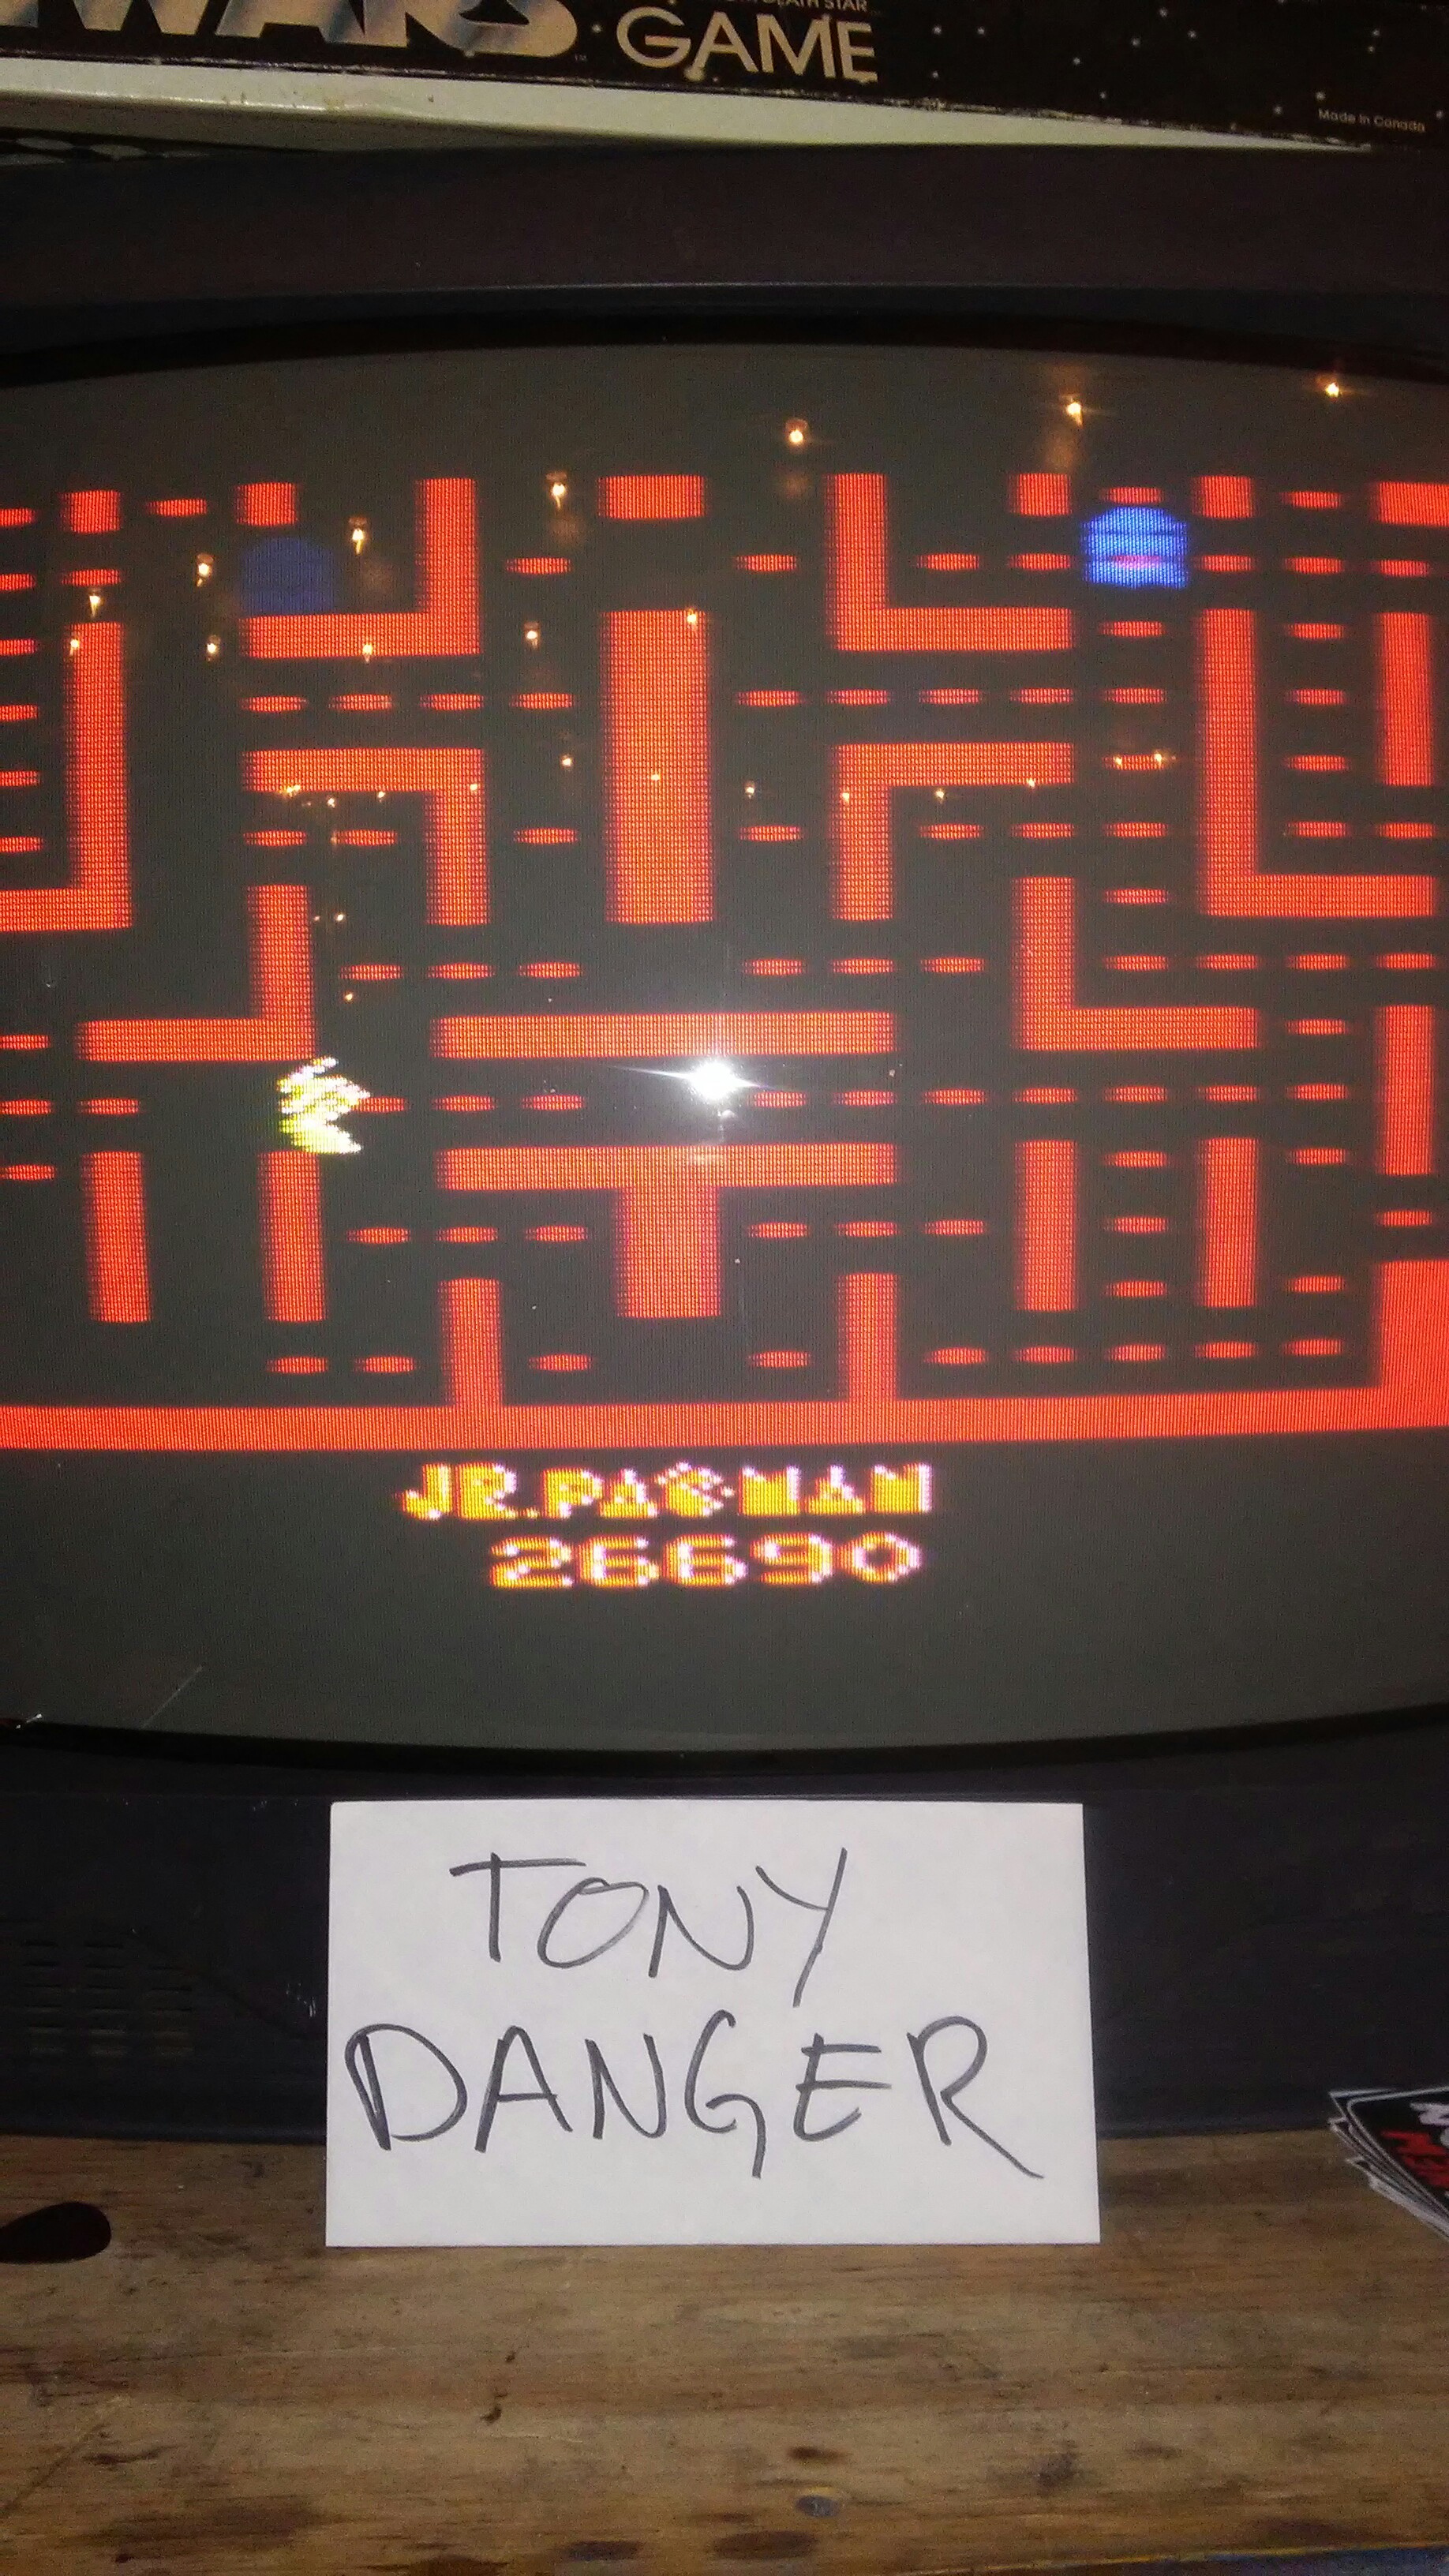 Jr. Pac-Man 26,690 points